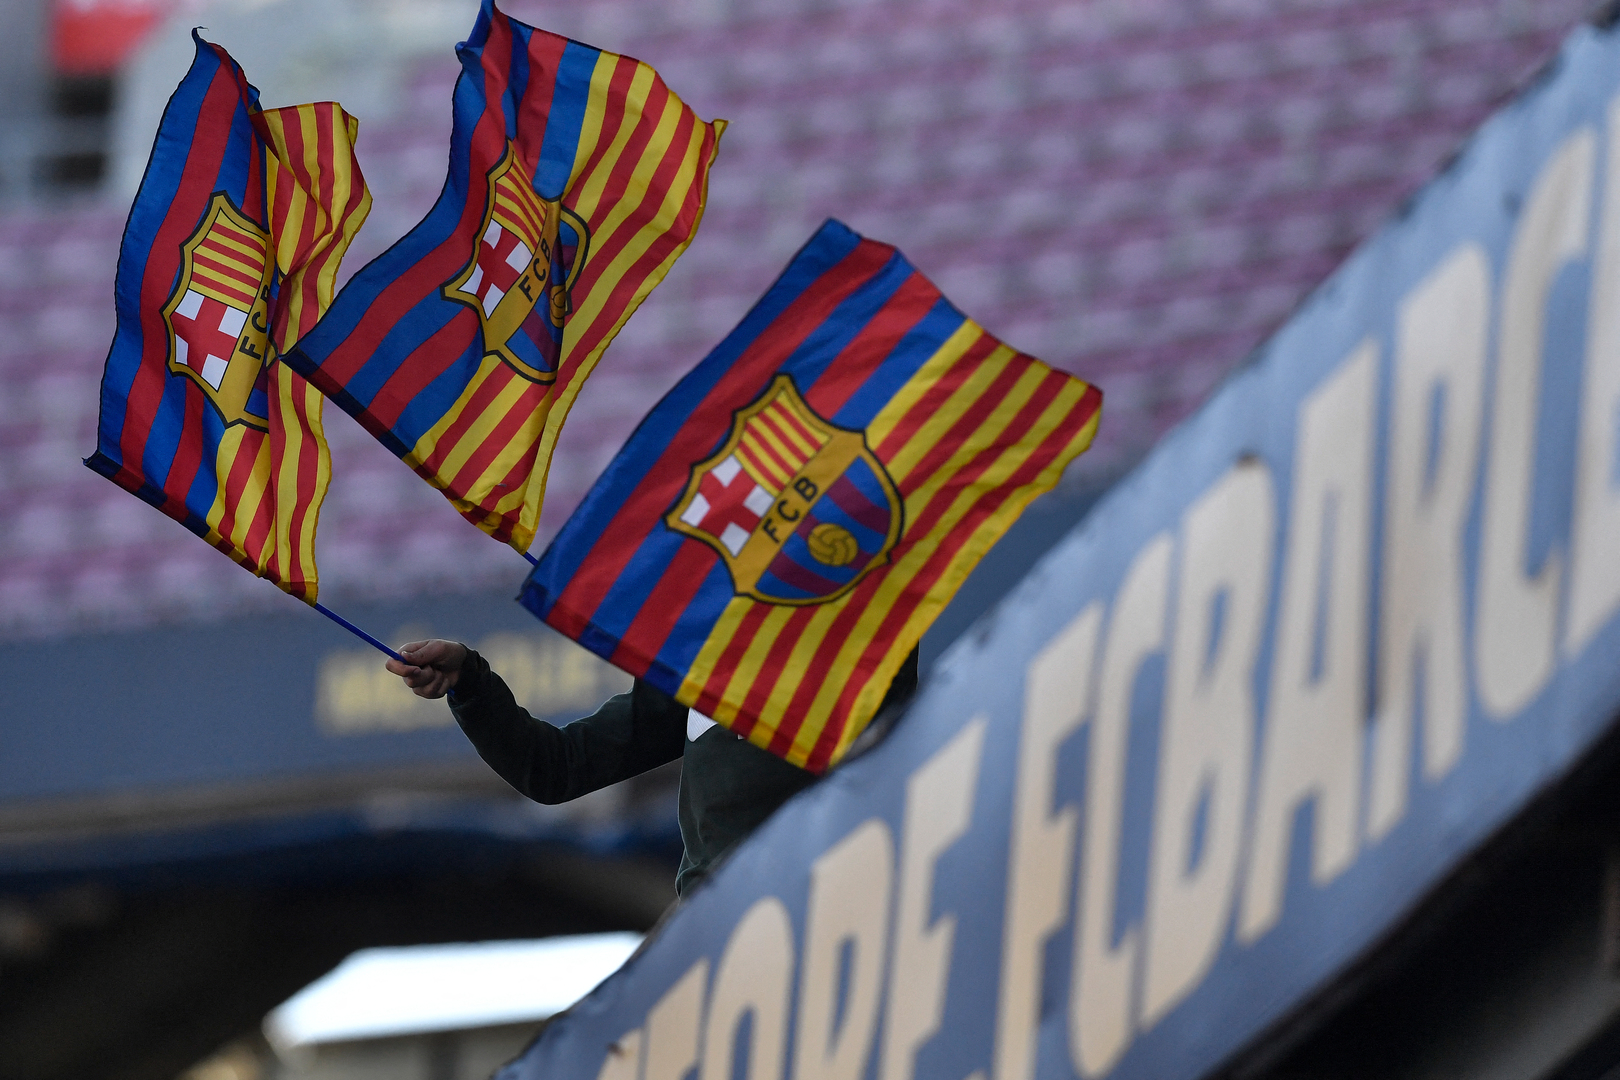 برشلونة يعلن إصابة 3 لاعبين جدد بفيروس كورونا